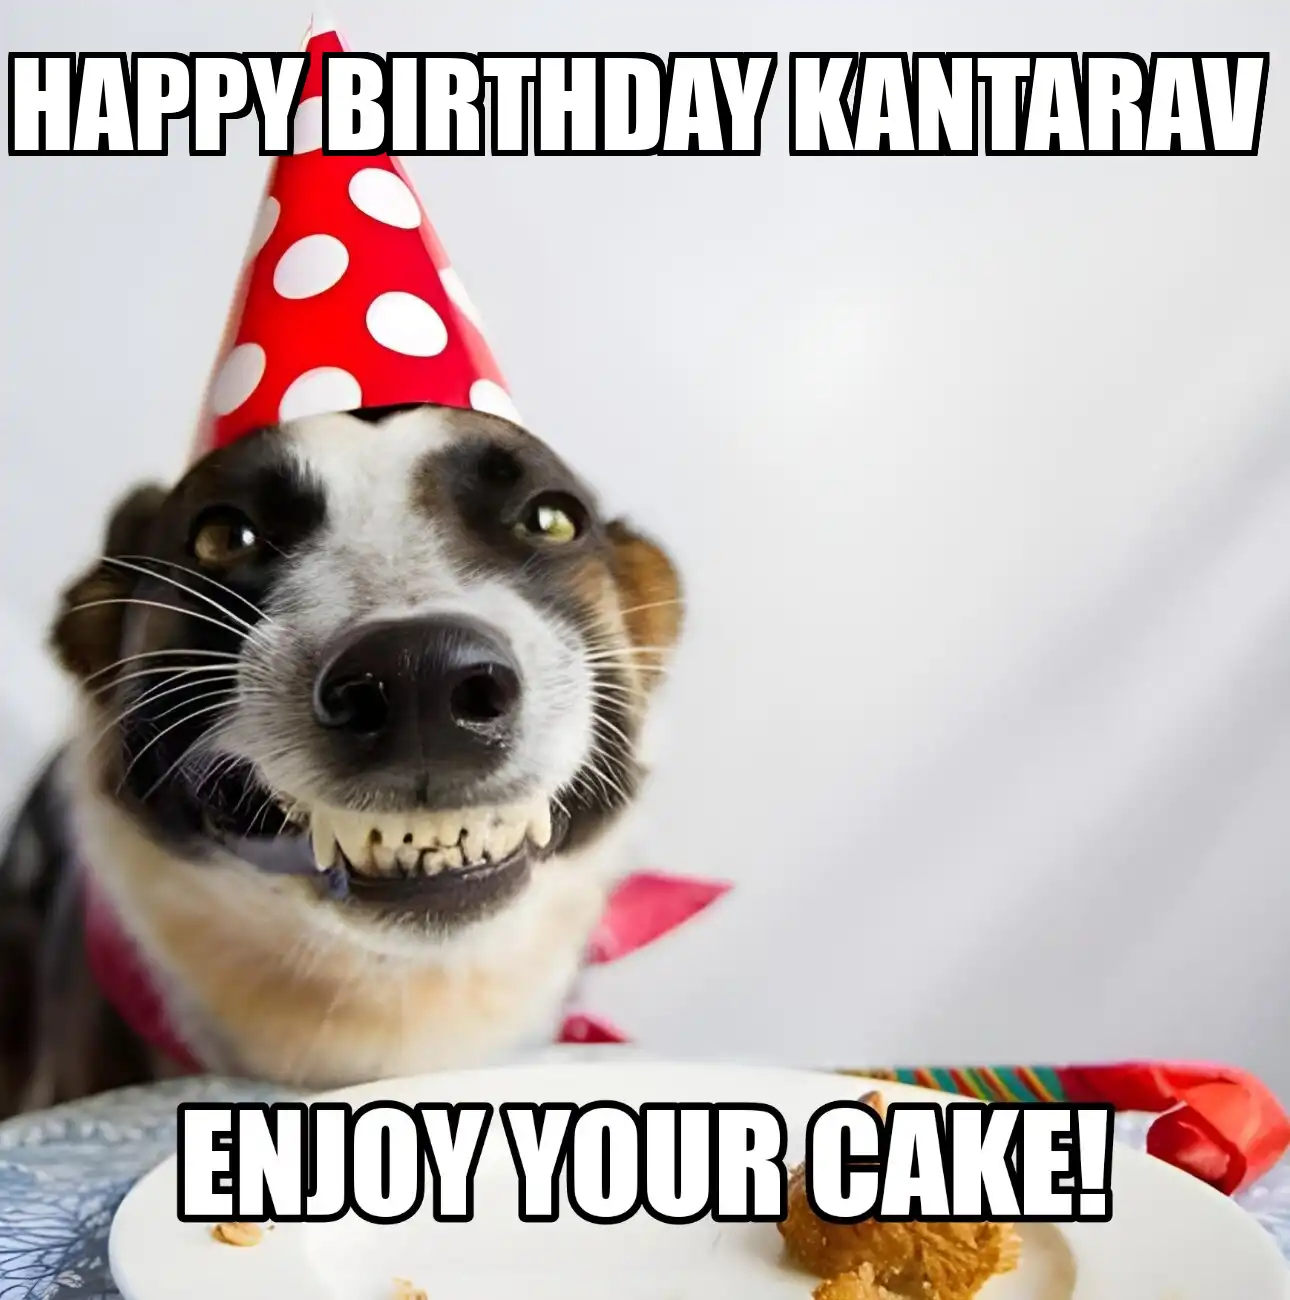 Happy Birthday Kantarav Enjoy Your Cake Dog Meme